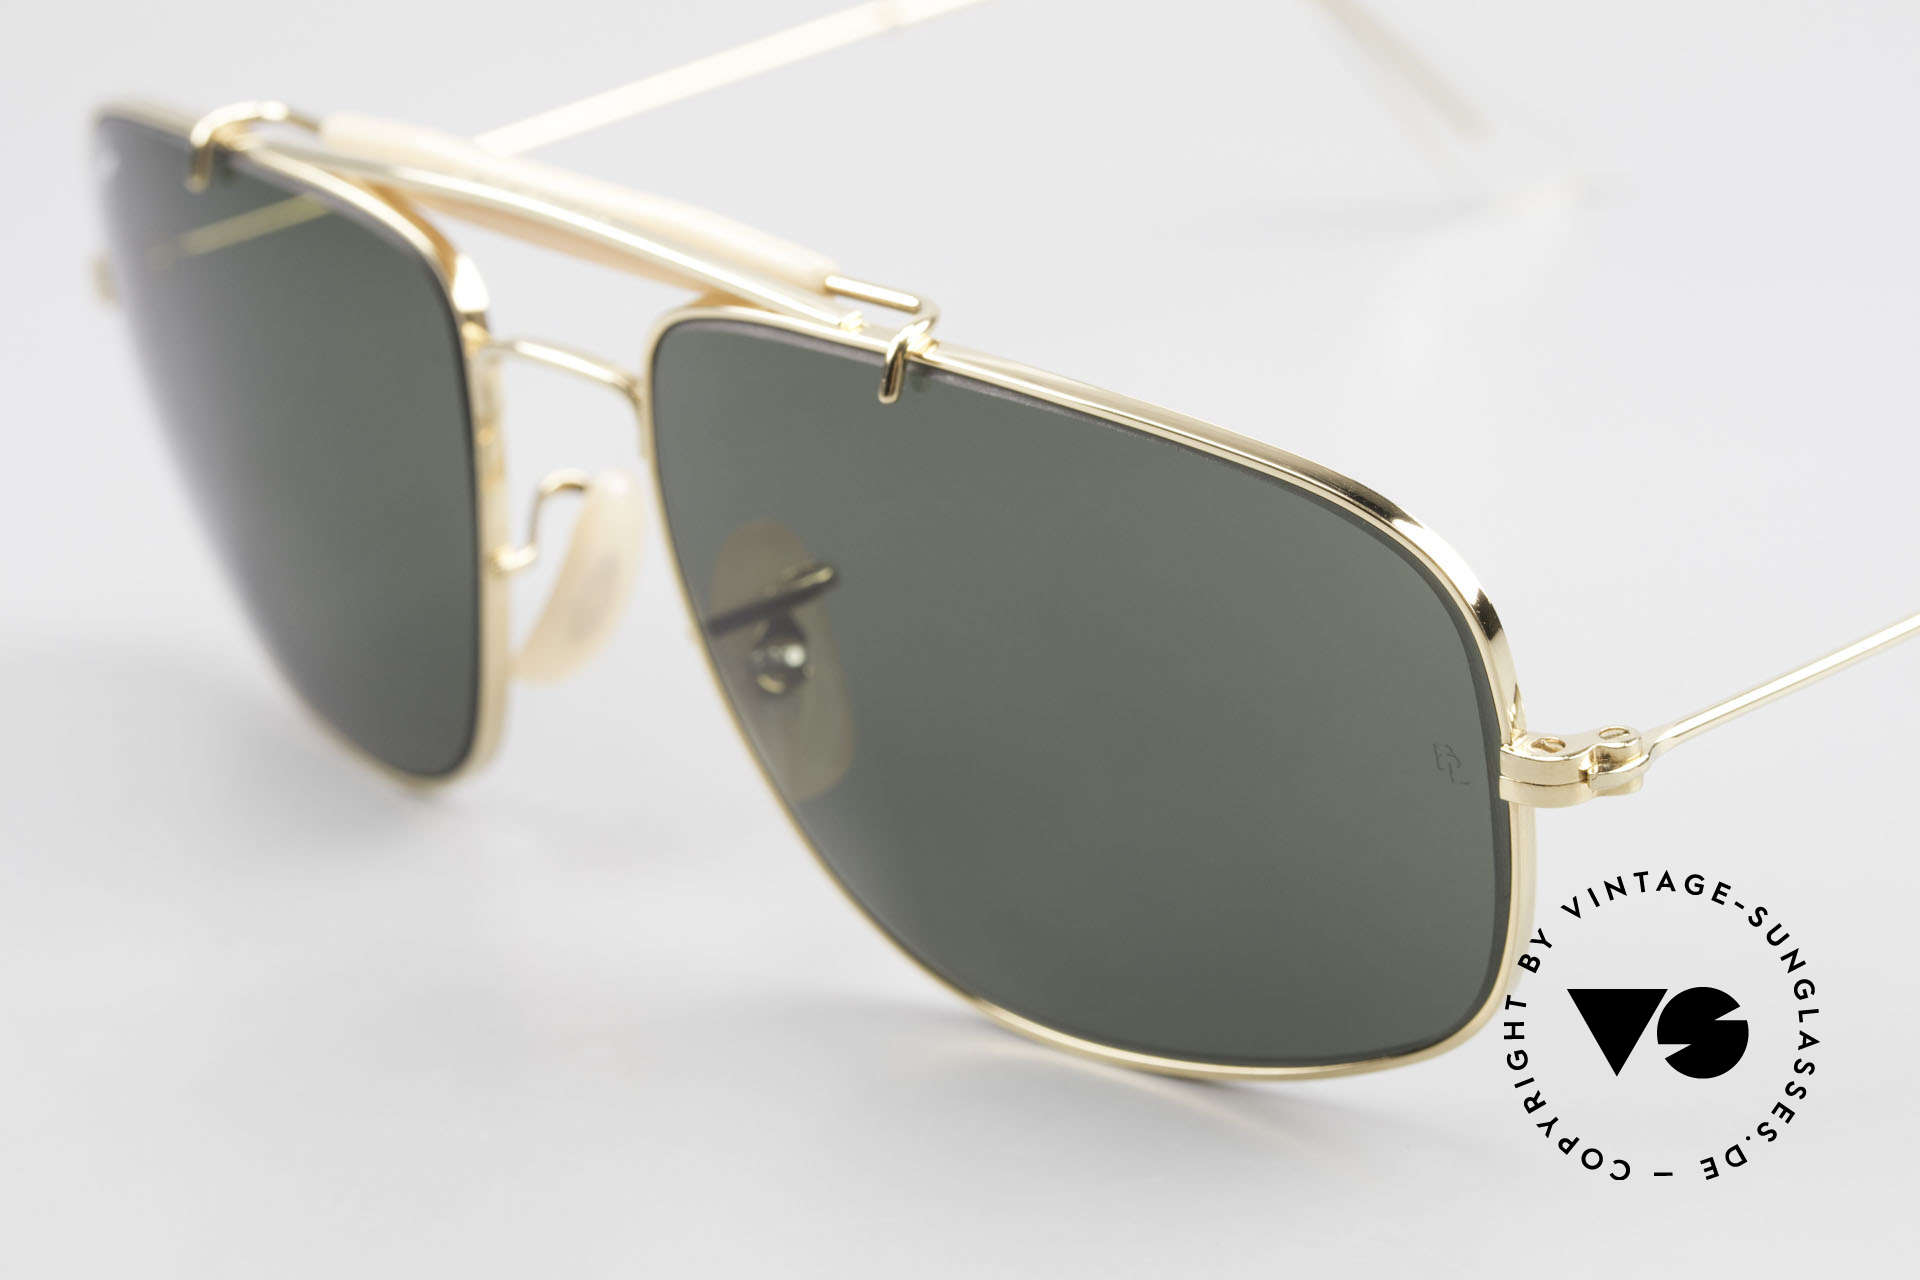 Sunglasses Ray Ban Explorer Browbar Old Ray Ban Made in USA B&L